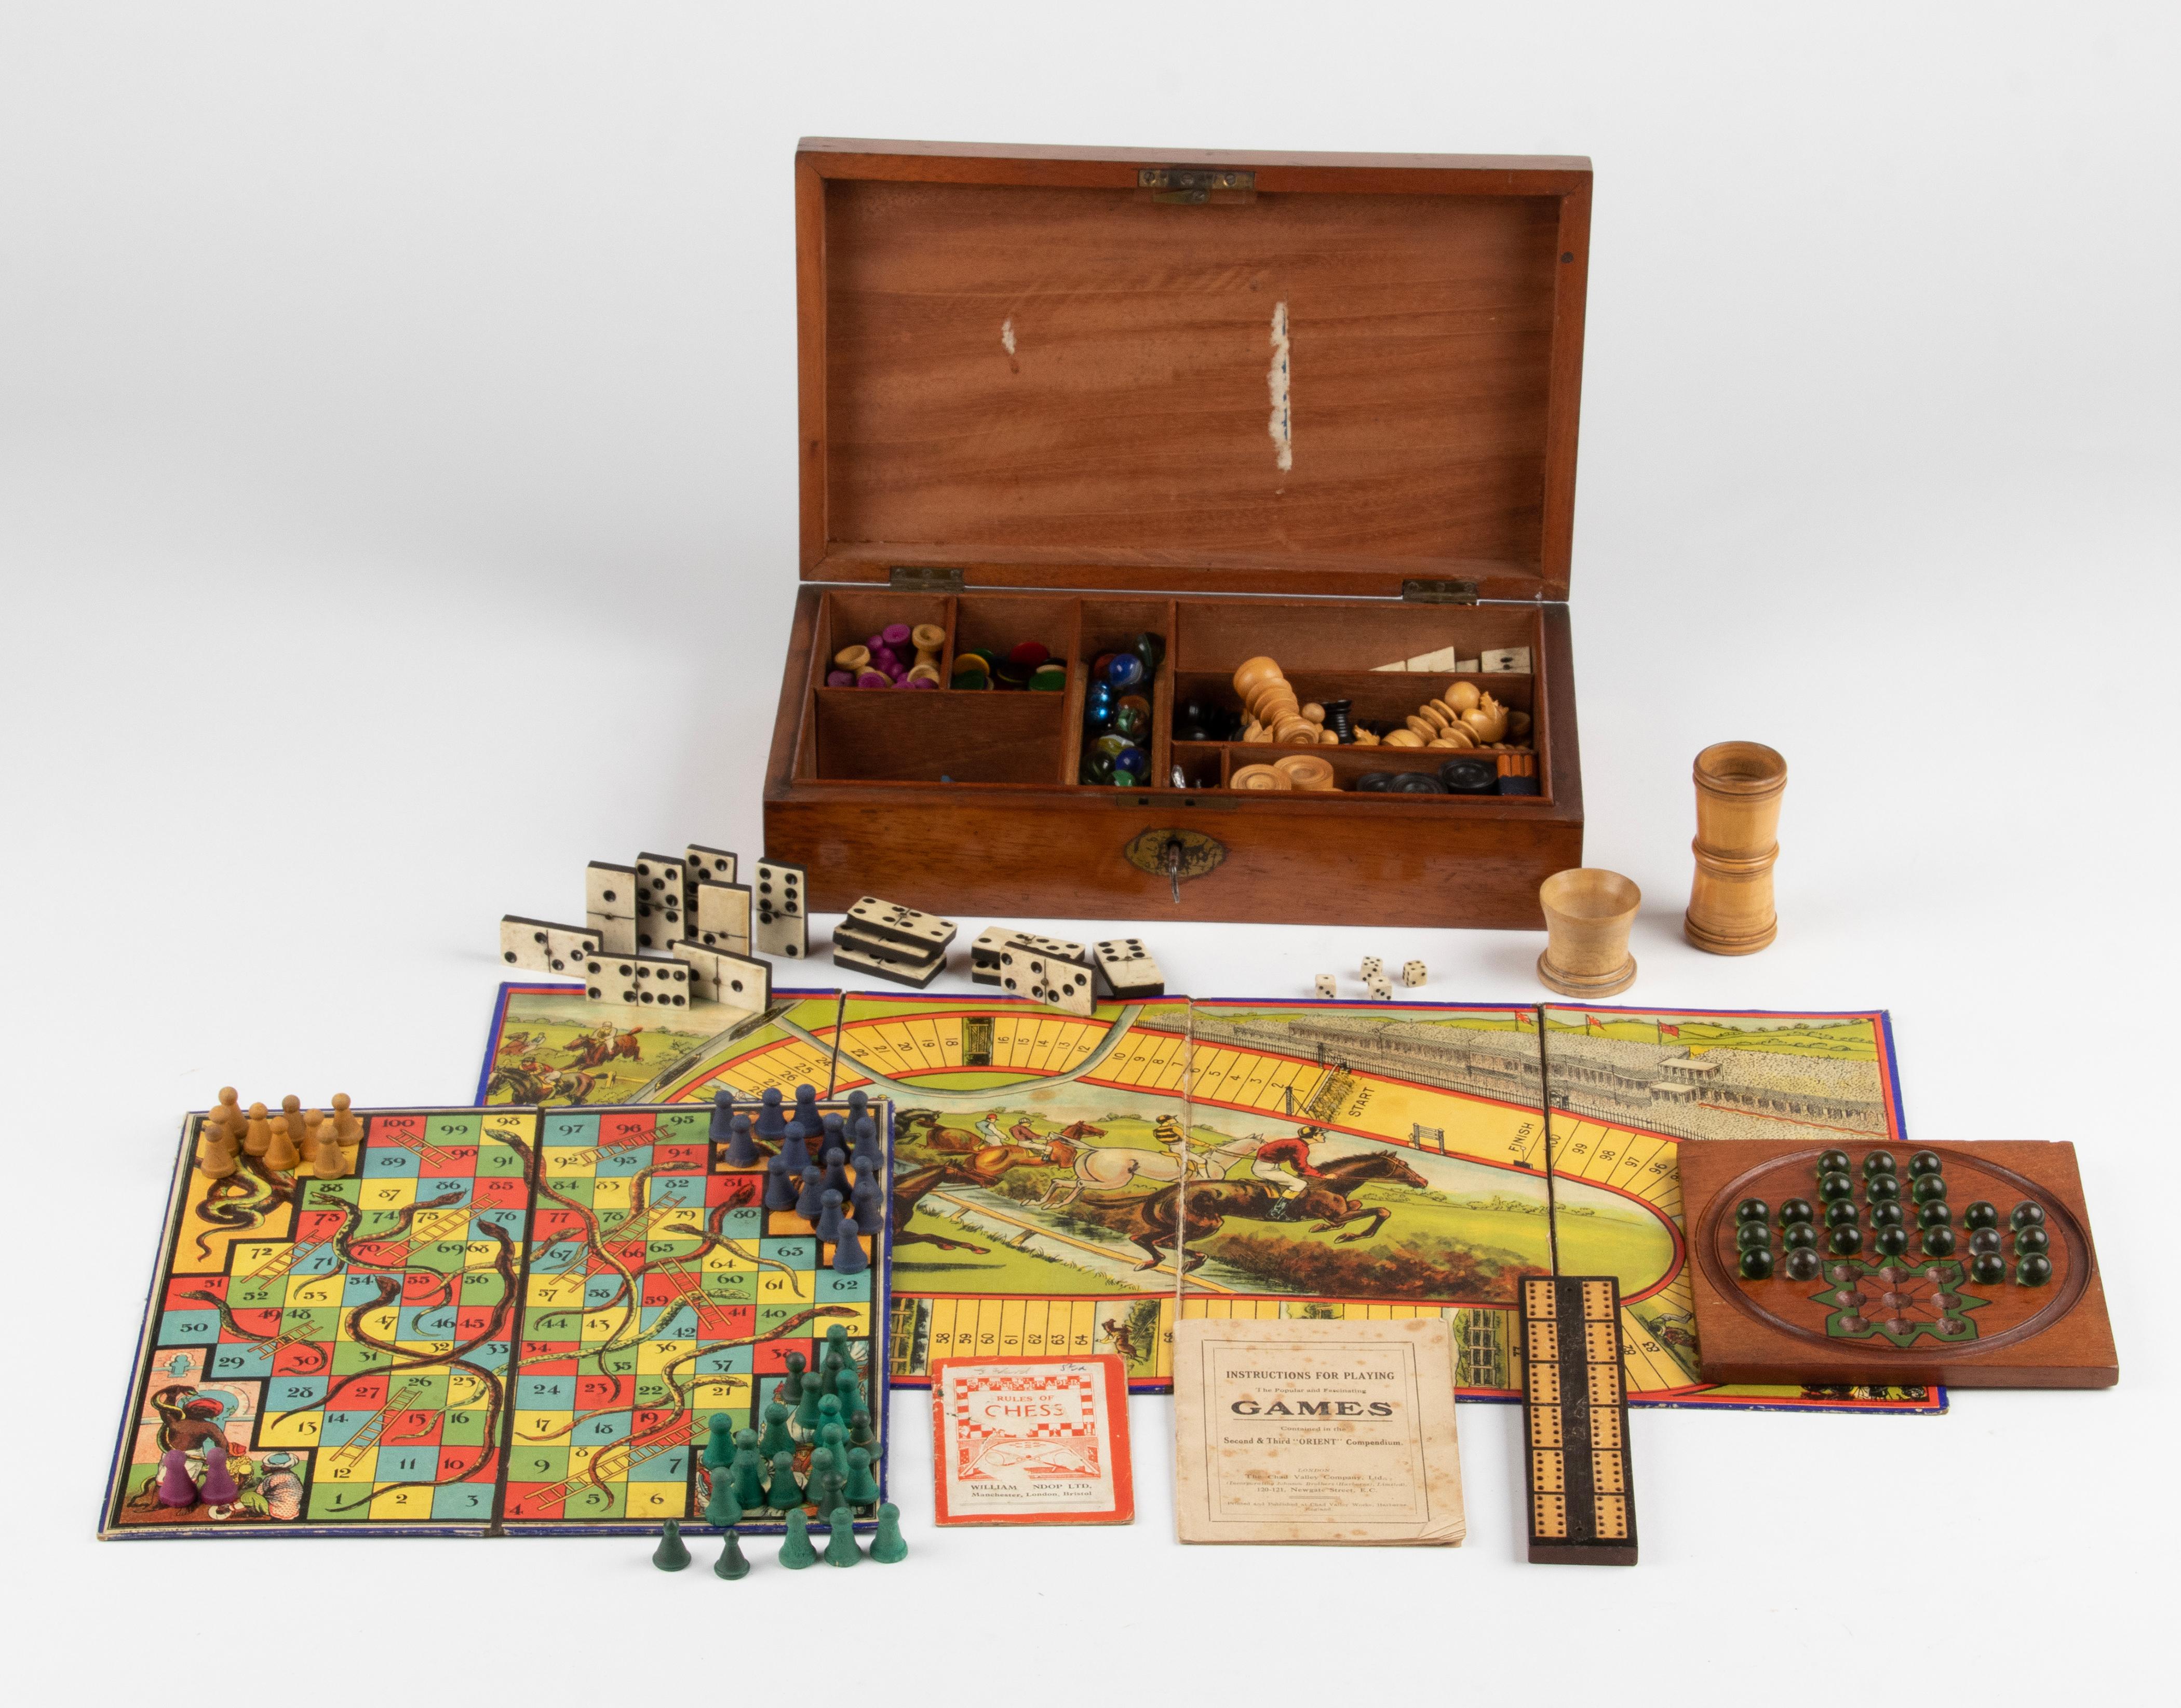 Wunderschöne antike Spielschachtel aus Mahagoniholz. 
Die Schachtel enthält mehrere Spiele mit vielen Kleinteilen. Nicht alle vollständig. 
Es ist offensichtlich, dass es mit den Spielen gespielt wurde, aber insgesamt kann man sagen, dass das Set in